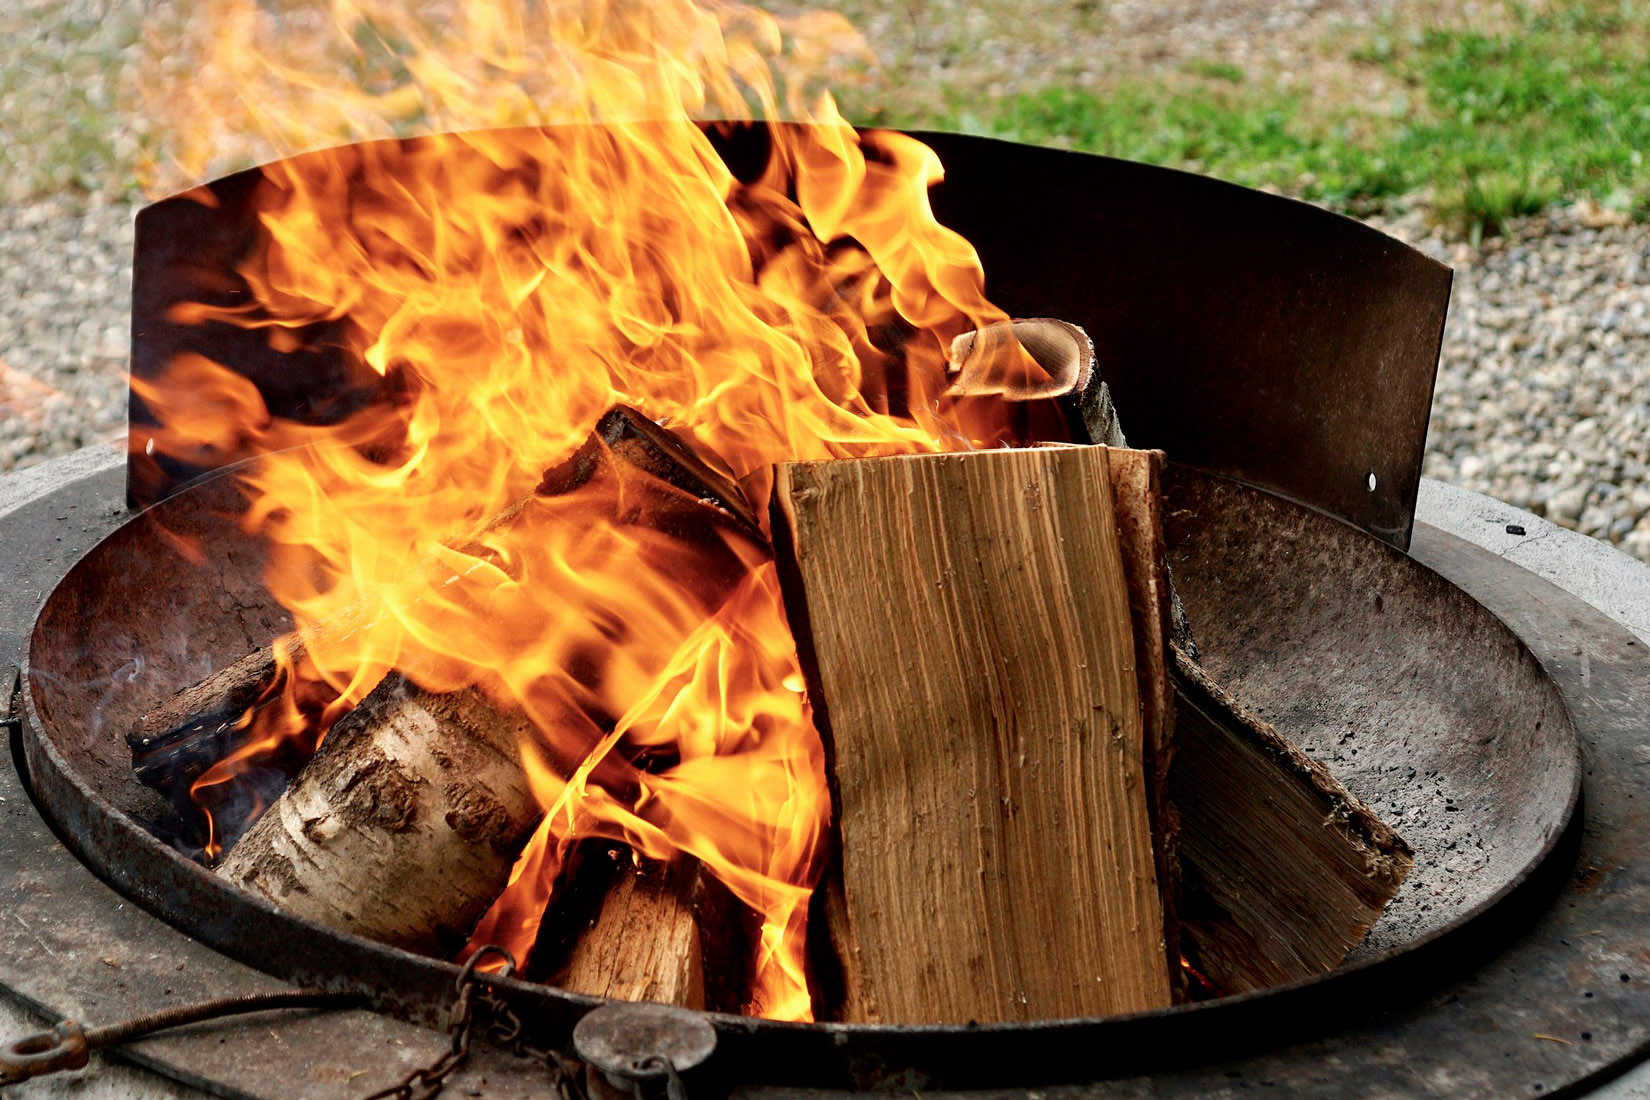 Na slici su prikazane cjepanice koje gore u metalnom krugu koji djeluje kao dio roštilja.Pri gorenju oslobađa se toplina i svjetlost.